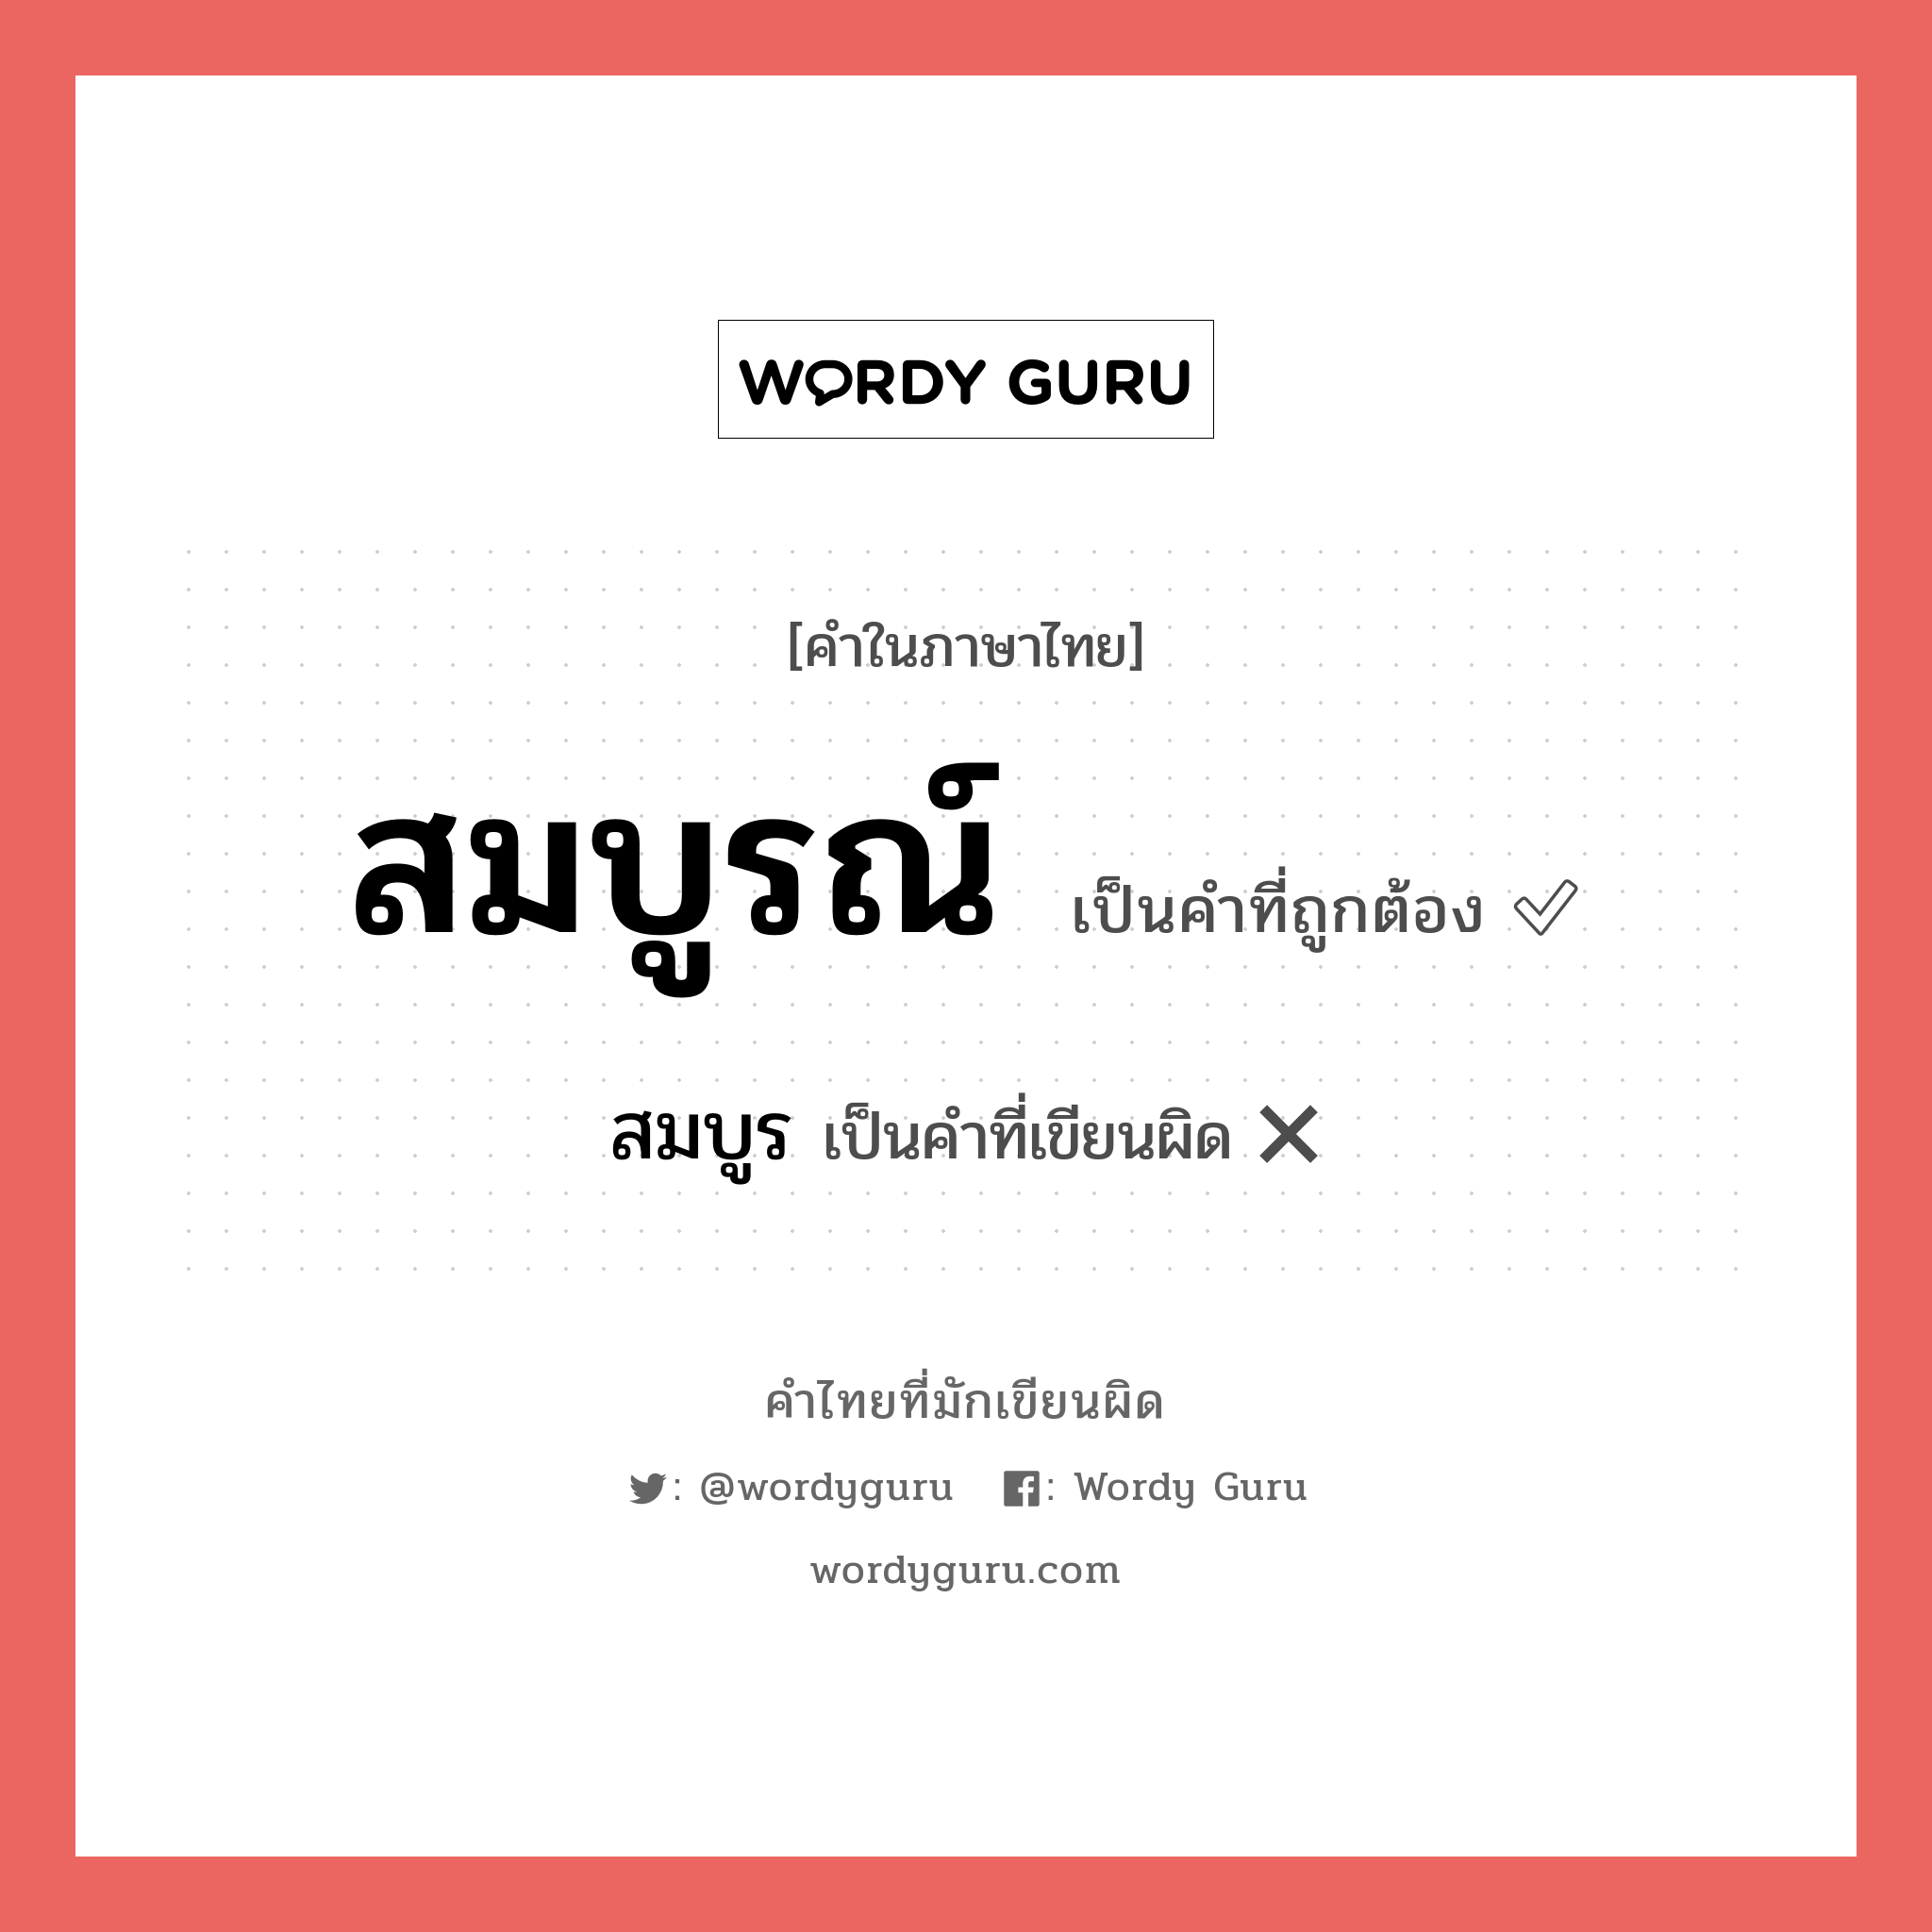 สมบูรณ์ หรือ สมบูร เขียนยังไง? คำไหนเขียนถูก?, คำในภาษาไทยที่มักเขียนผิด สมบูรณ์ คำที่ผิด ❌ สมบูร